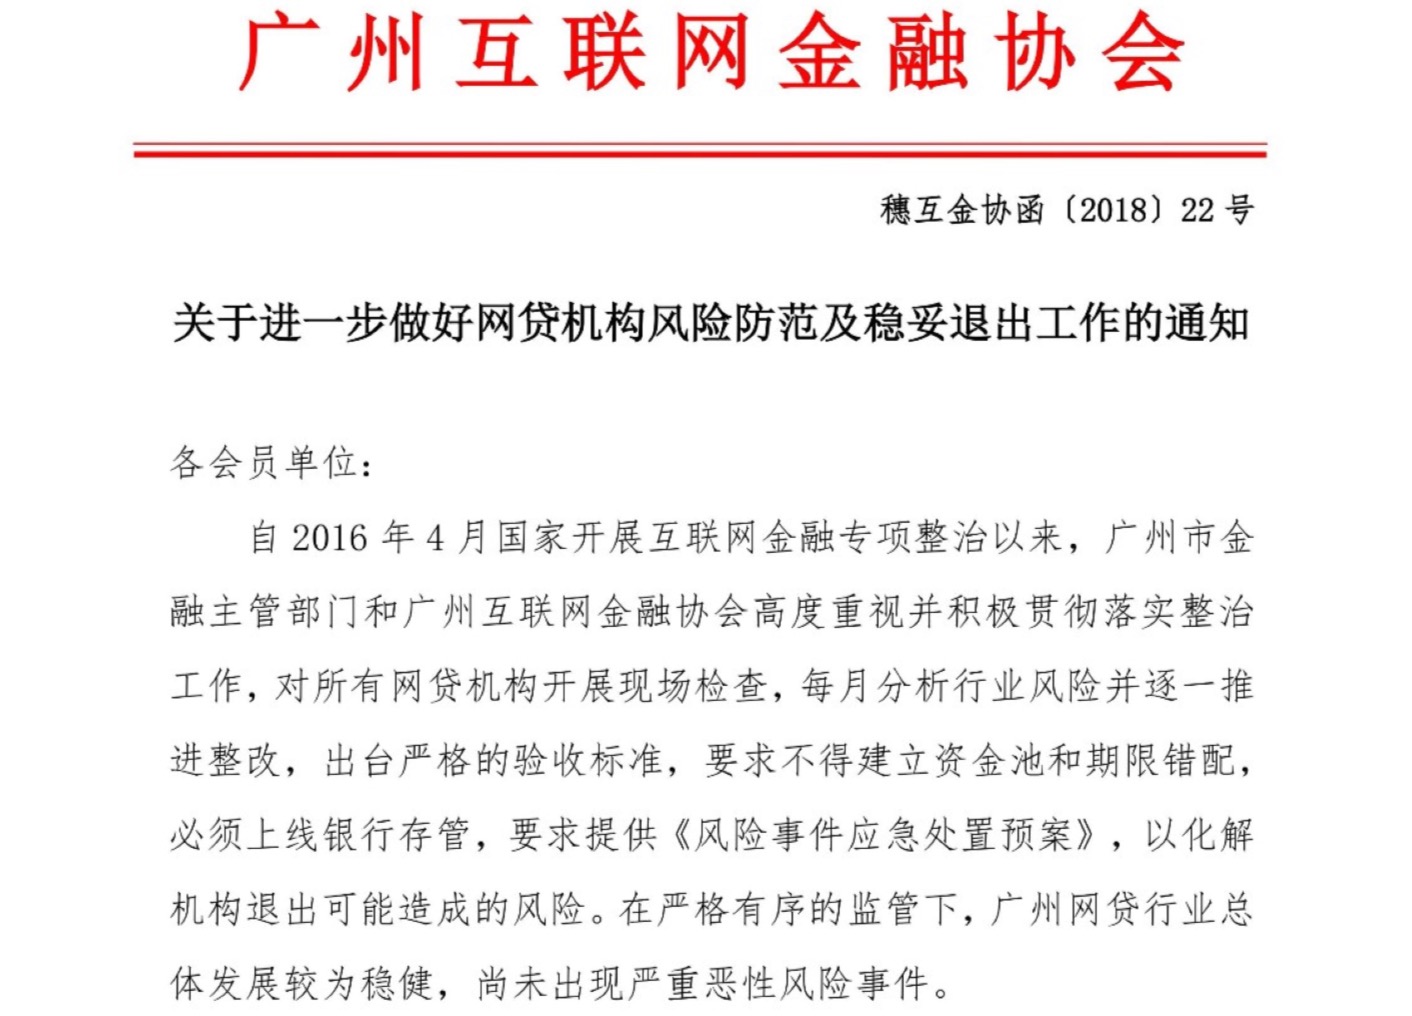 广州互金协会:网贷机构项目逾期严禁跑路、失